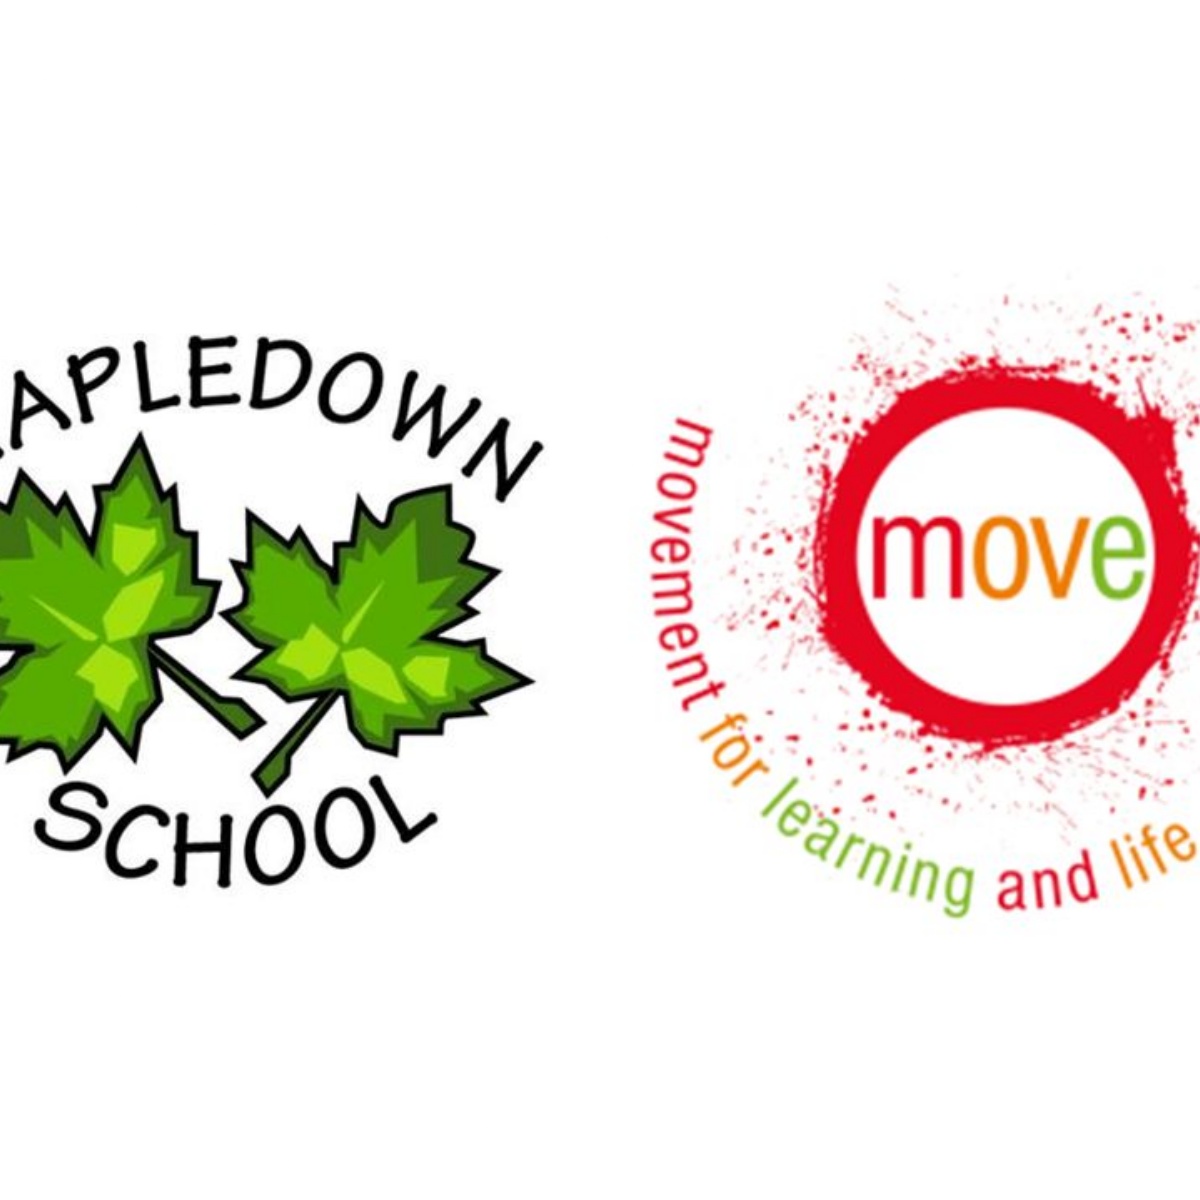 Mapledown School MOVE Day 27th June 2022